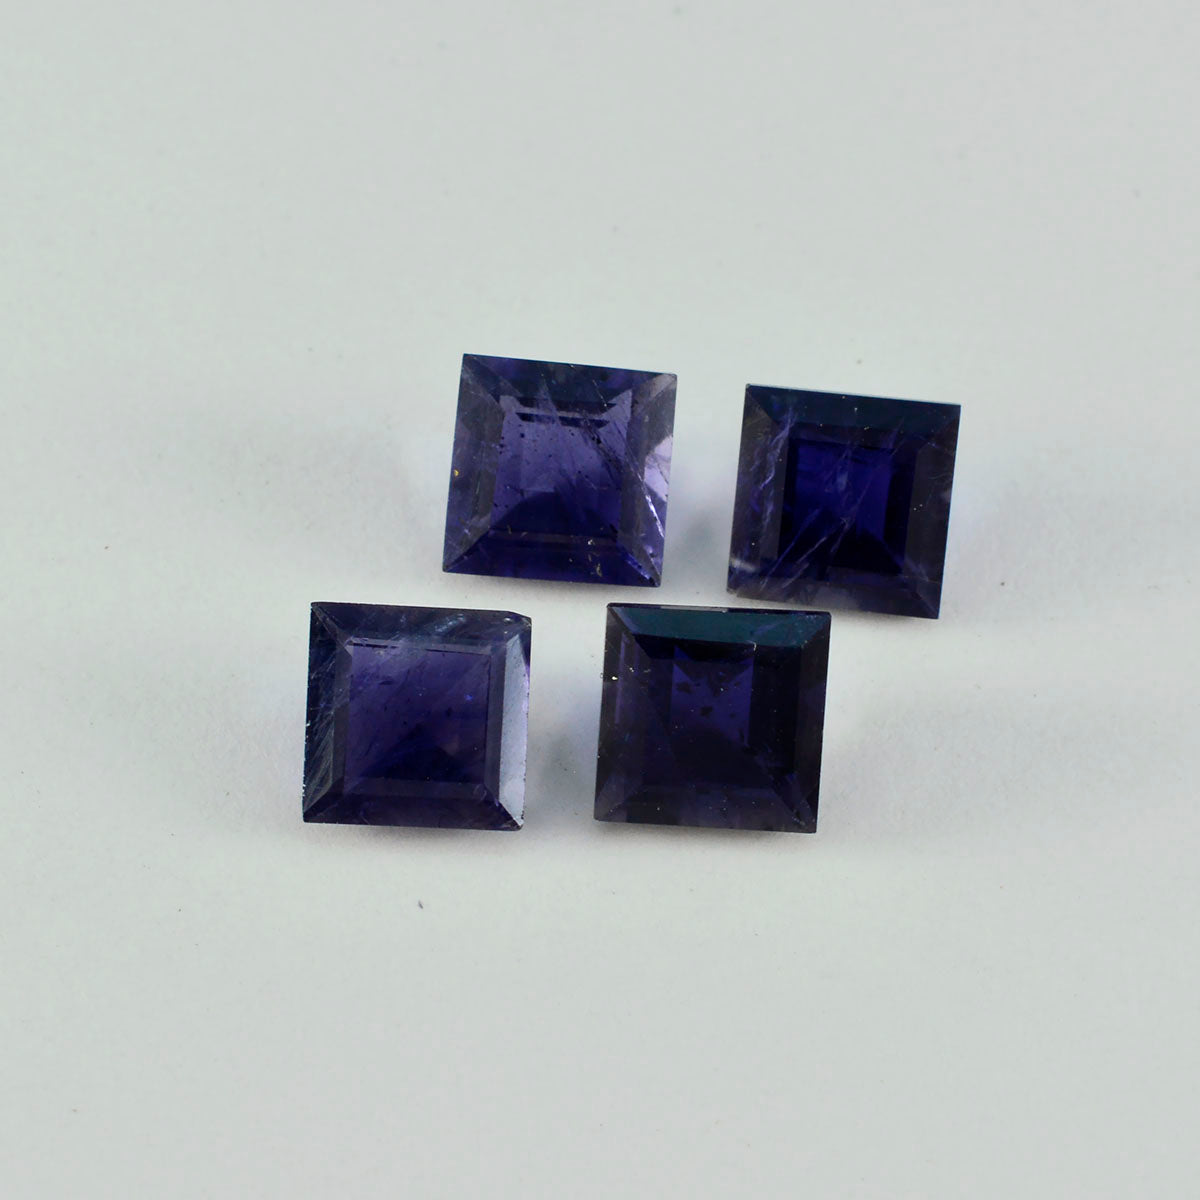 riyogems 1 шт. синий иолит ограненный 15x15 мм квадратной формы красивый качественный драгоценный камень